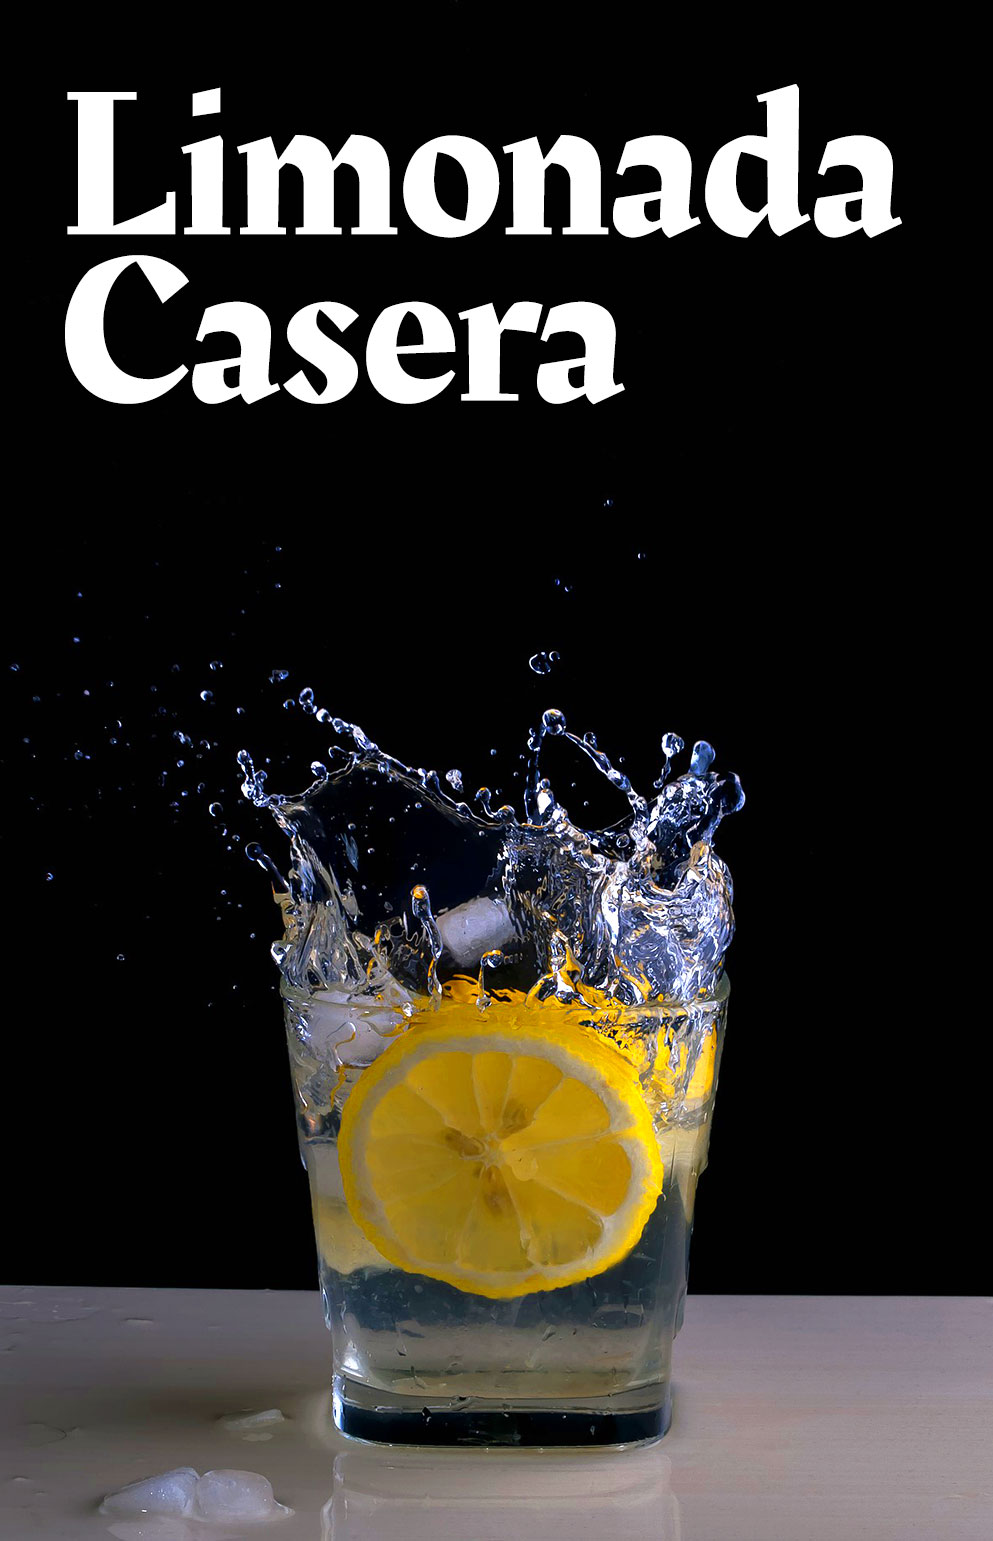 Limonada Casera